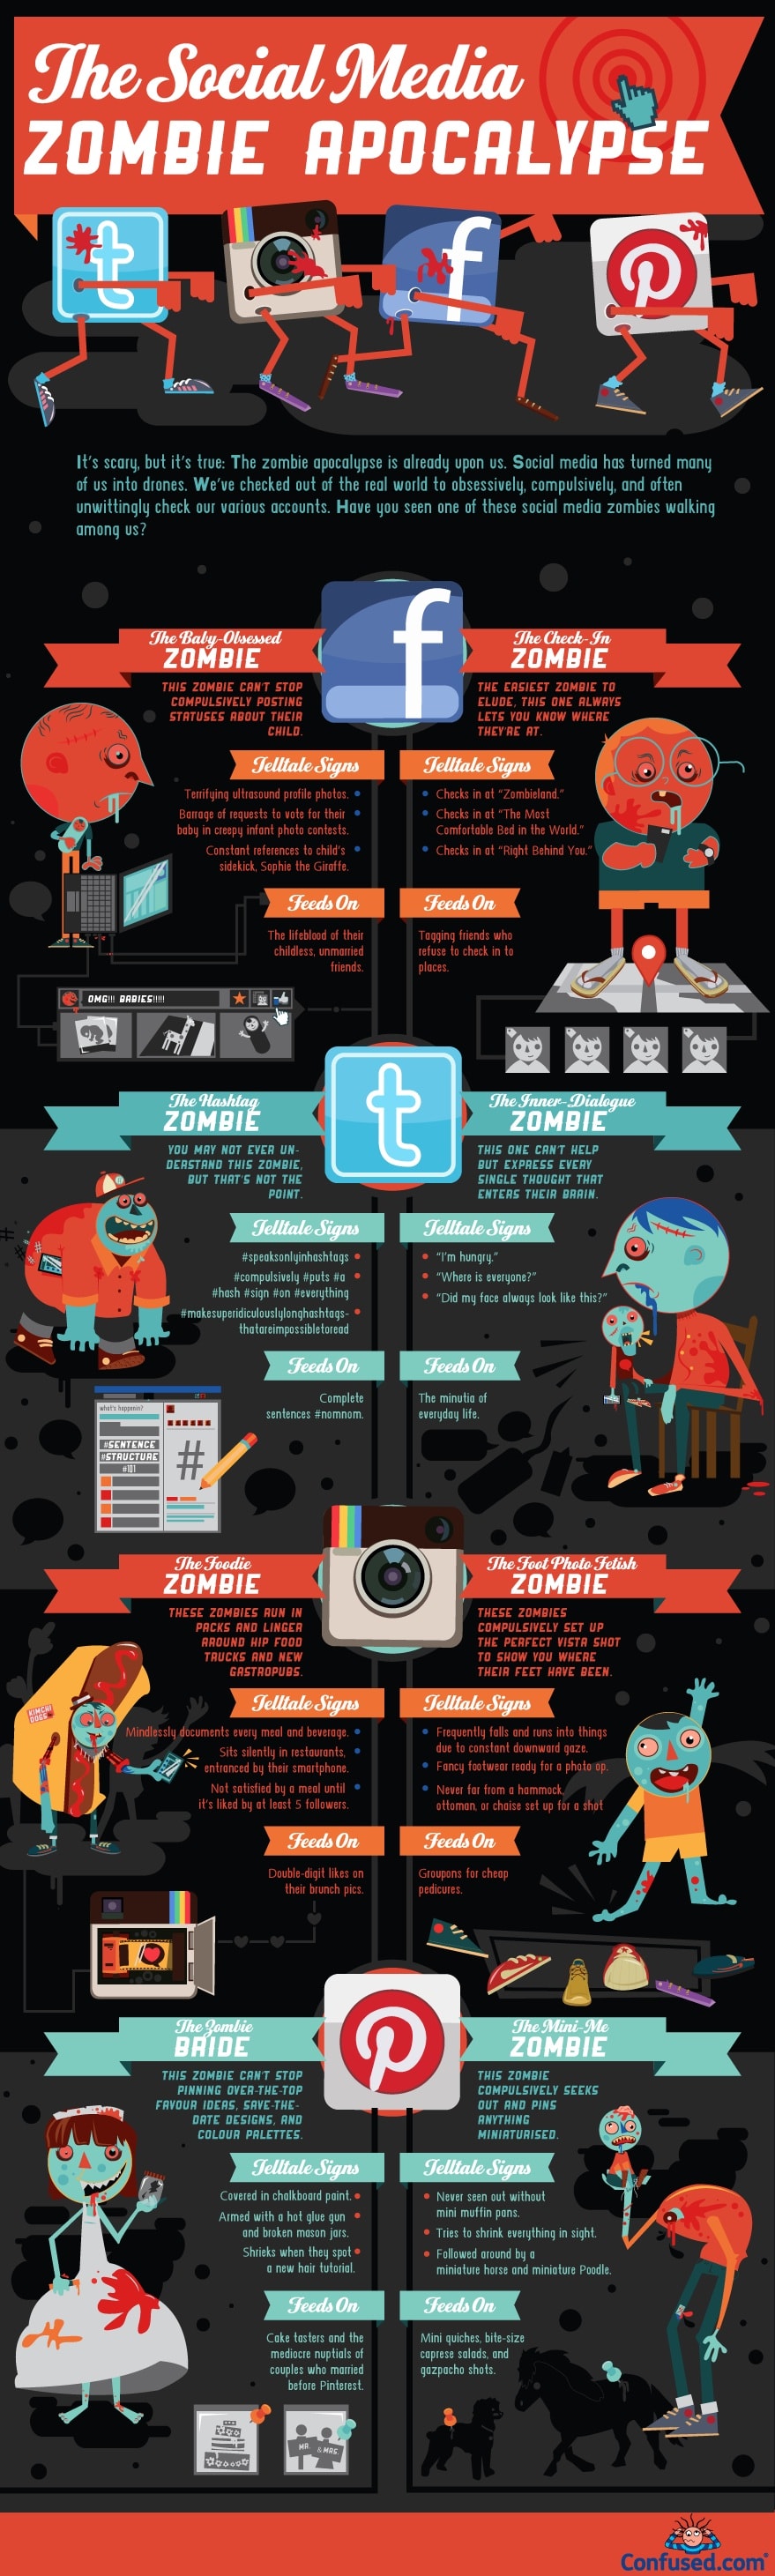 social-media-zombie-apocalypse-infographic